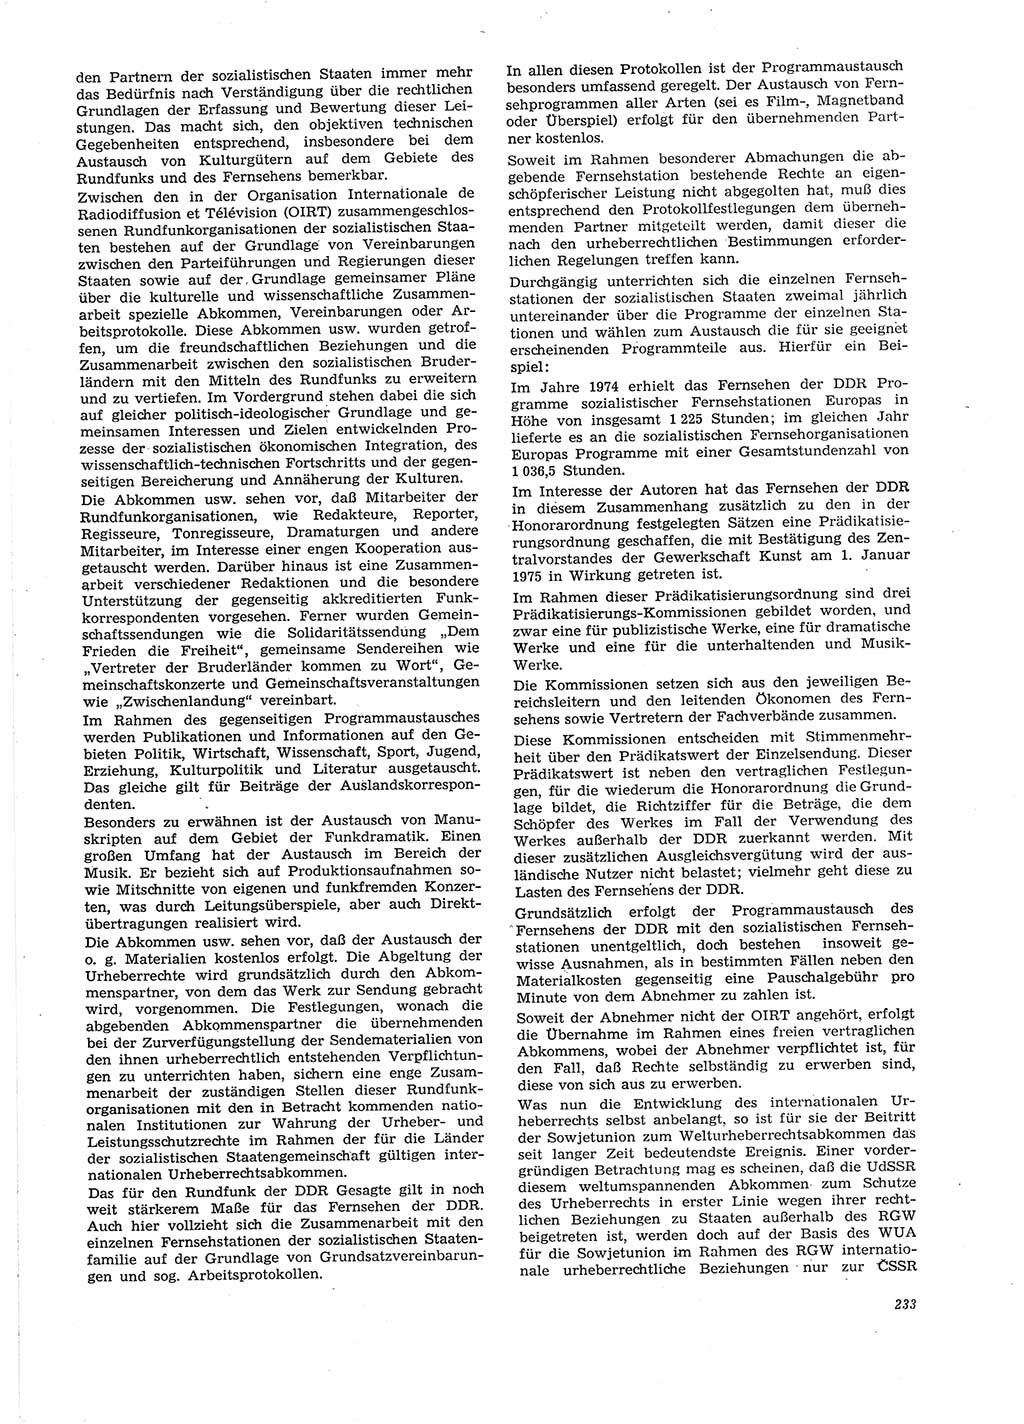 Neue Justiz (NJ), Zeitschrift für Recht und Rechtswissenschaft [Deutsche Demokratische Republik (DDR)], 29. Jahrgang 1975, Seite 233 (NJ DDR 1975, S. 233)